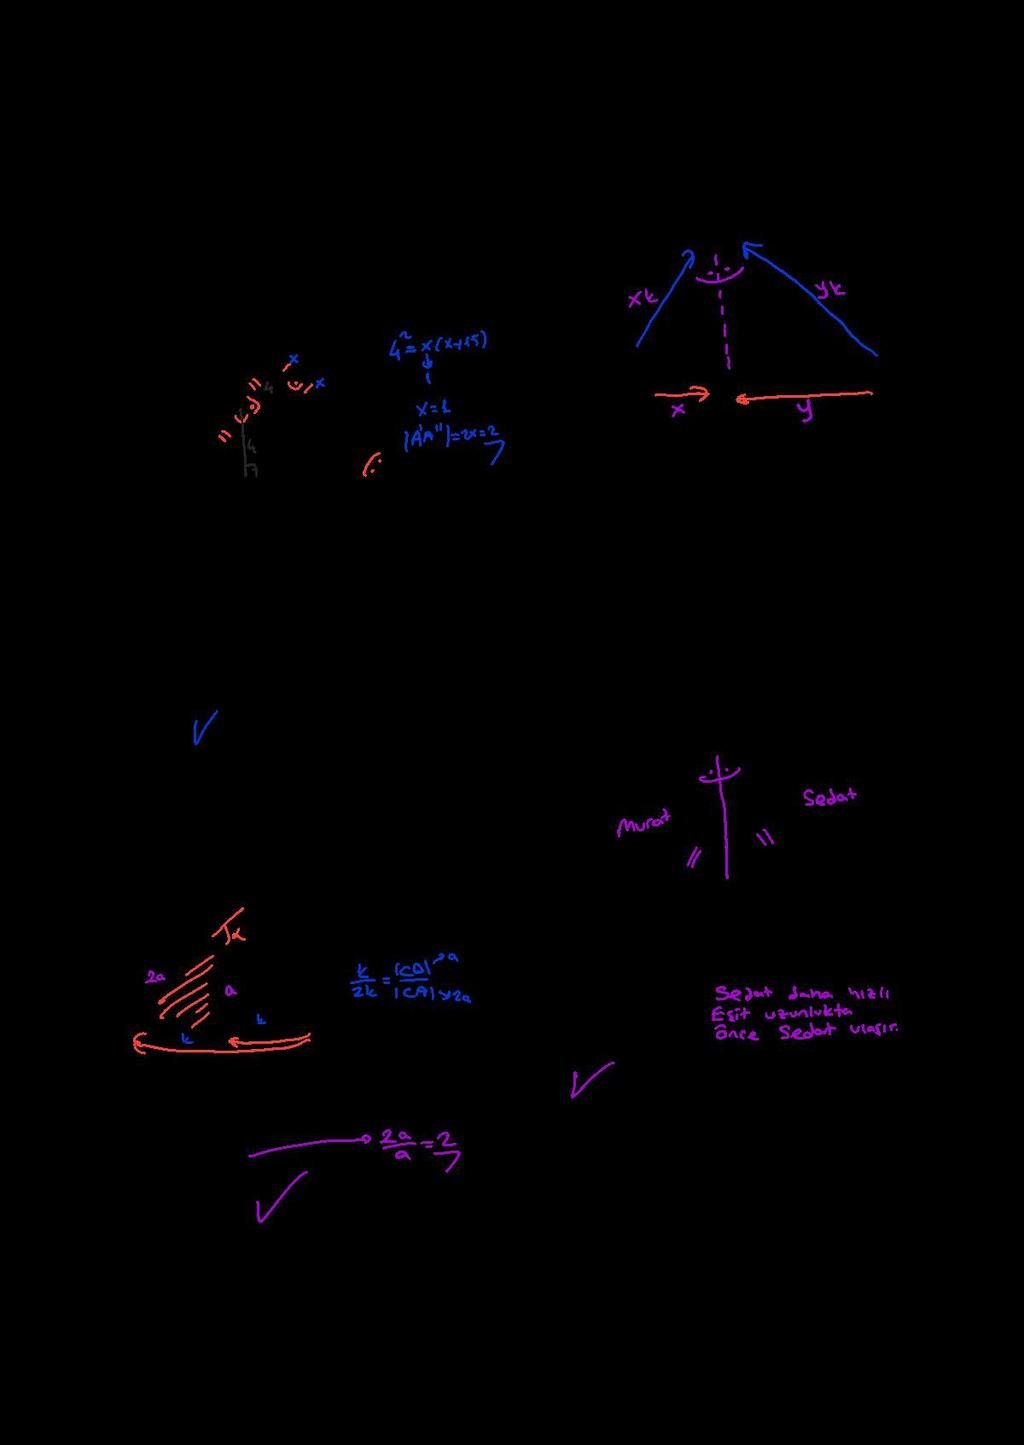 ÇOT 6. ı 4 8. şağıda 1. havaalanı ile doğrusal konumda olan,. havaalanı ile üçgen oluşturan ve noktaları gösterilmiştir. Şekilde gösterilen çizgiler, ve havaalanları arasındaki yollardır.